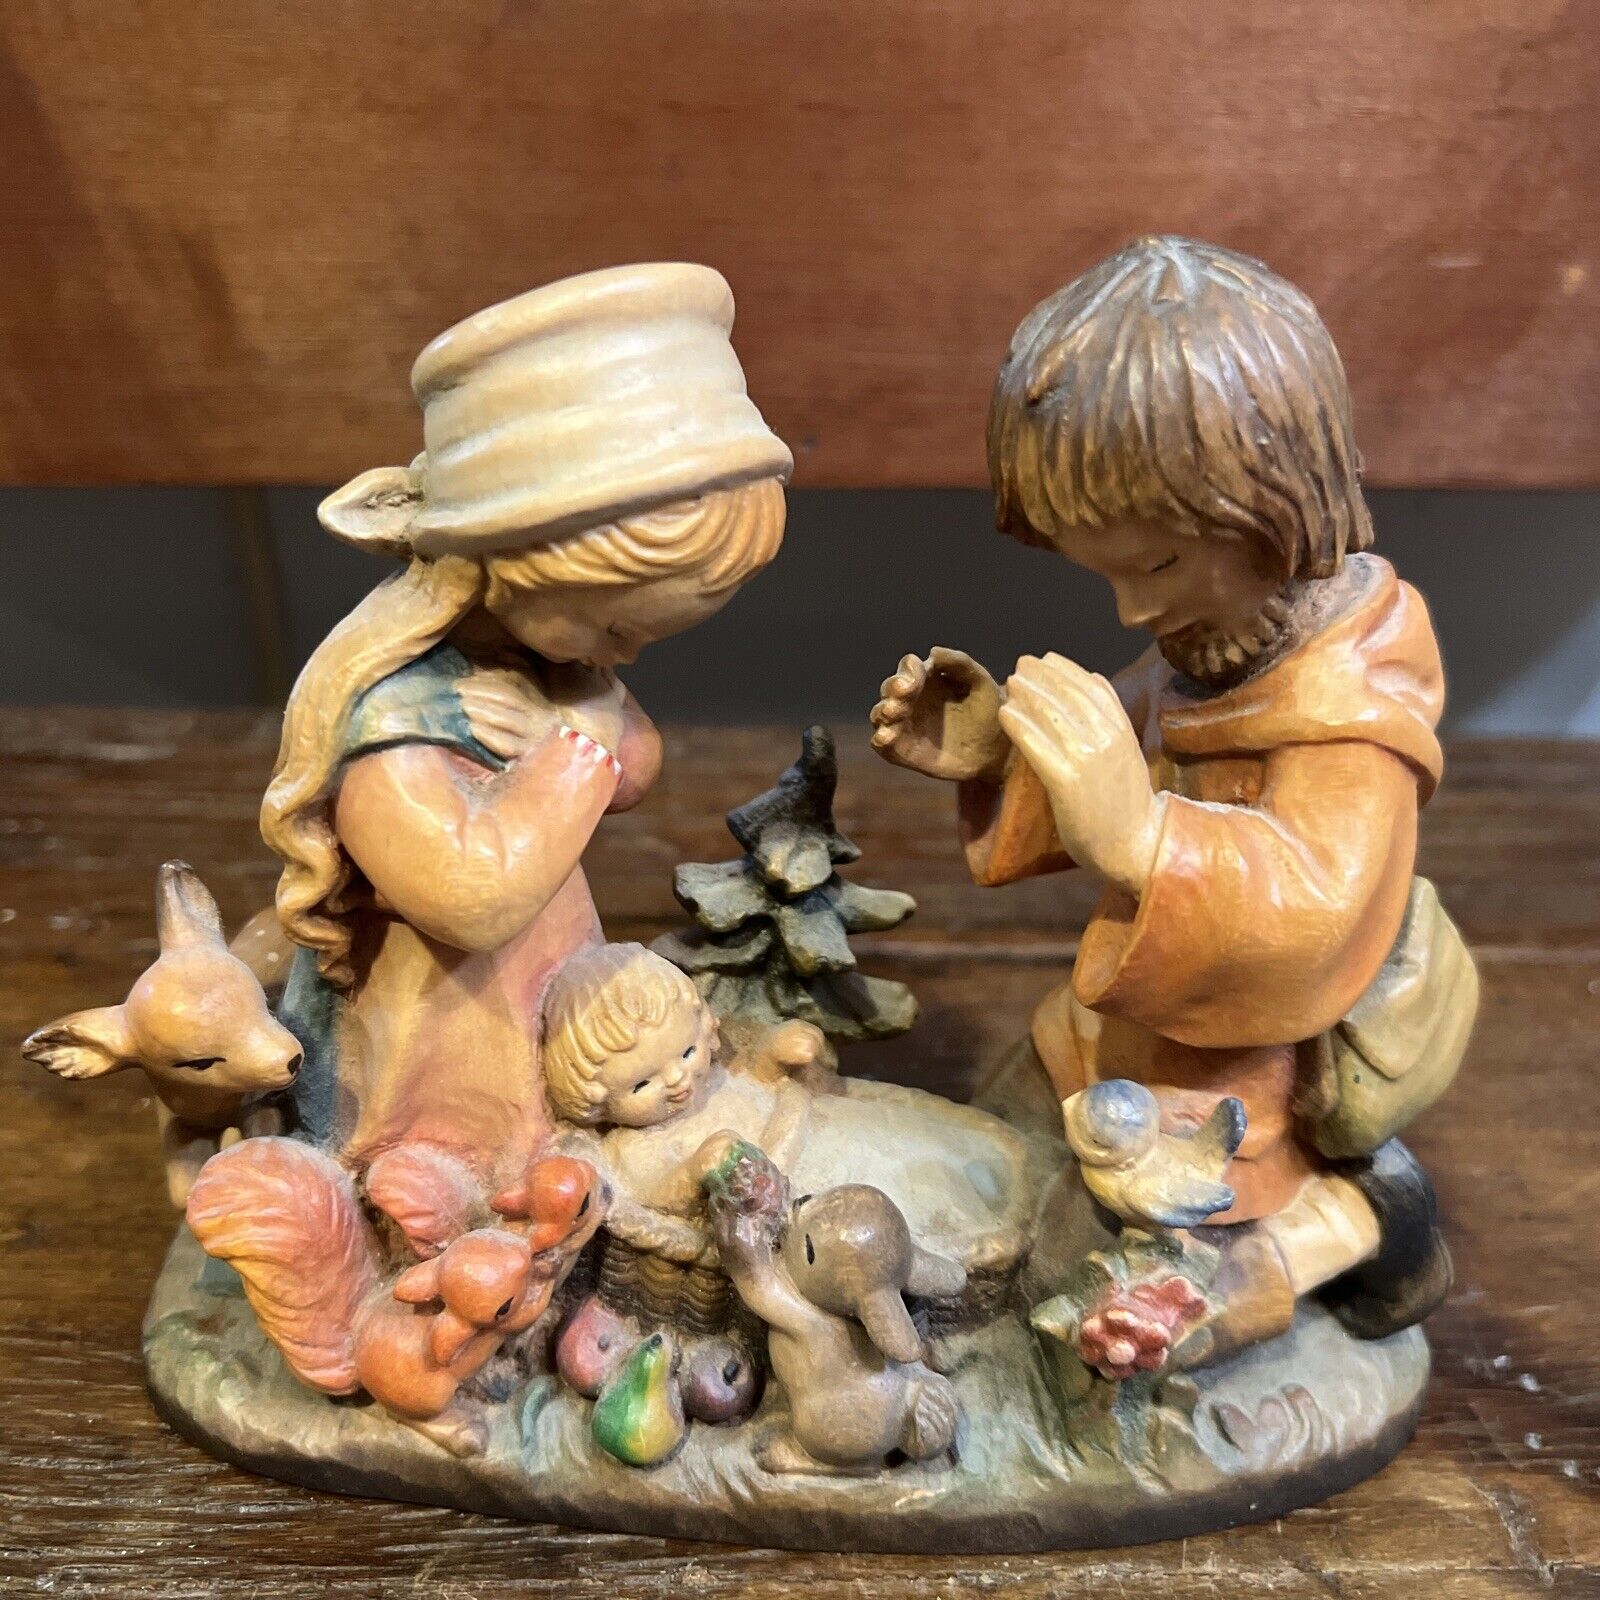 Vint. Ferrandiz Anri Wood Carving Figure HOLY FAMILY Nativity Scene 5 1/2